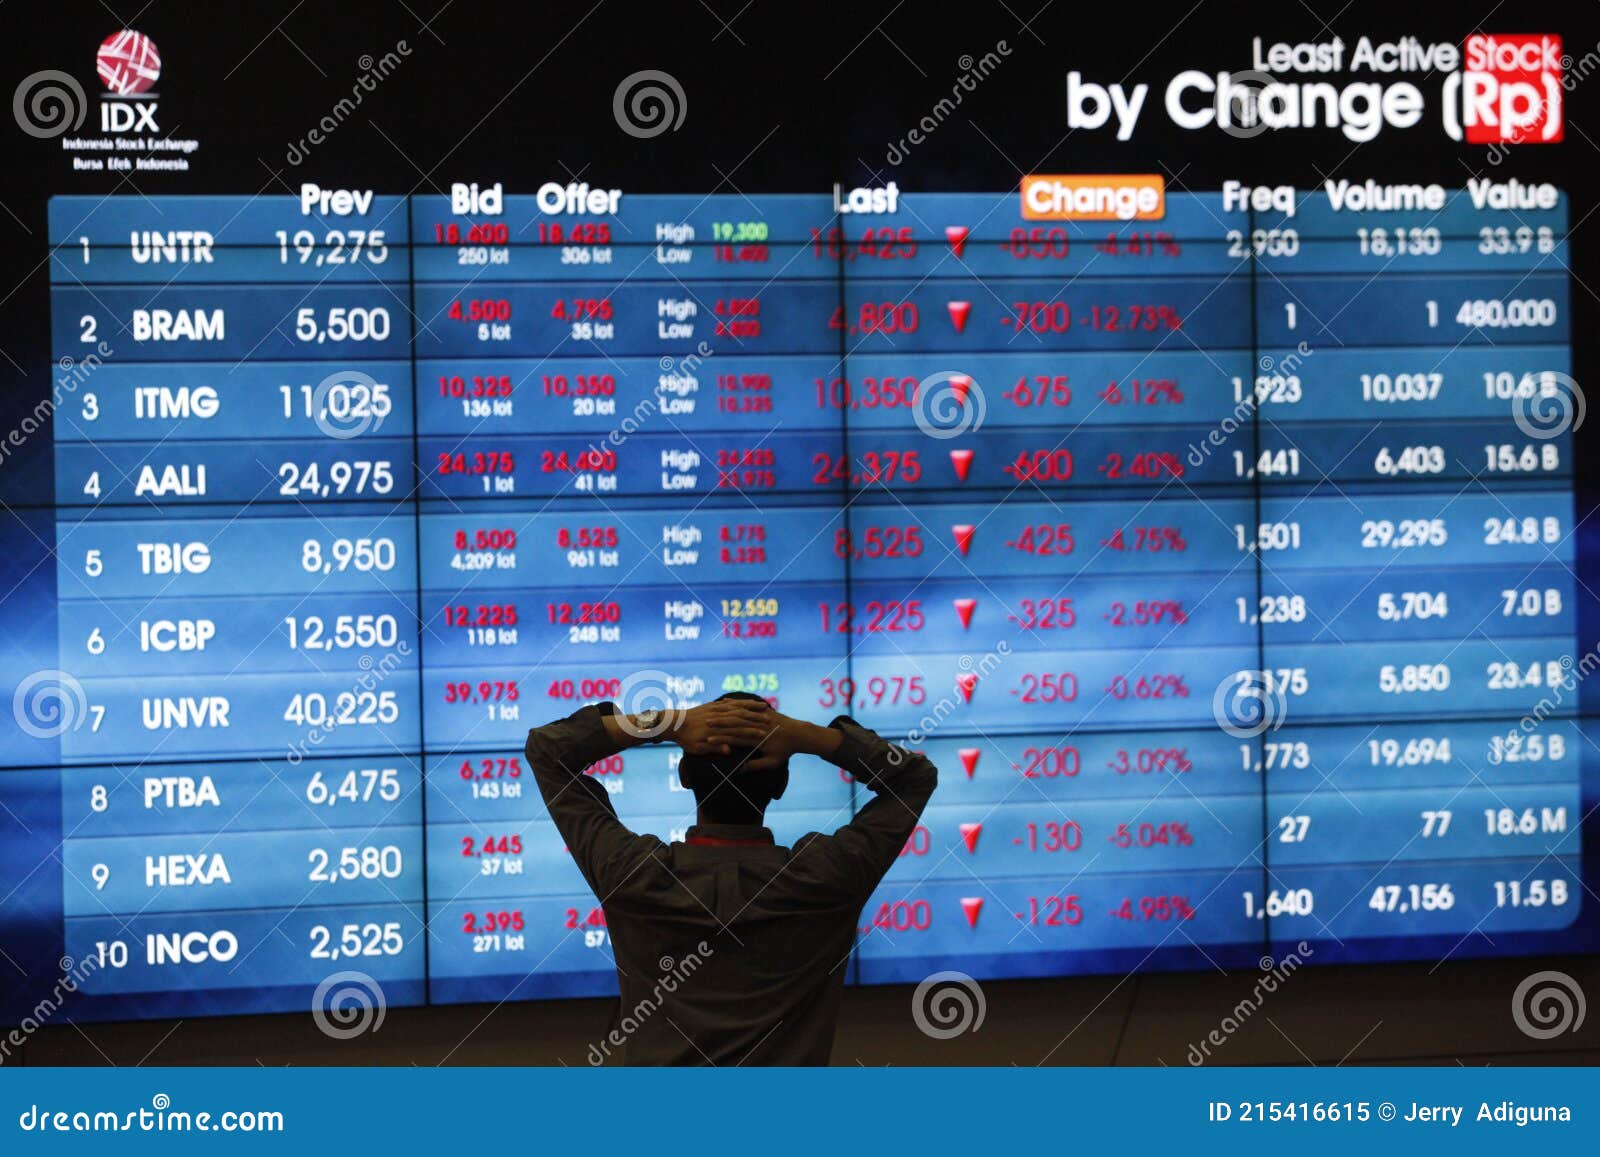 Indonesia Stock Exchange - Wikipedia